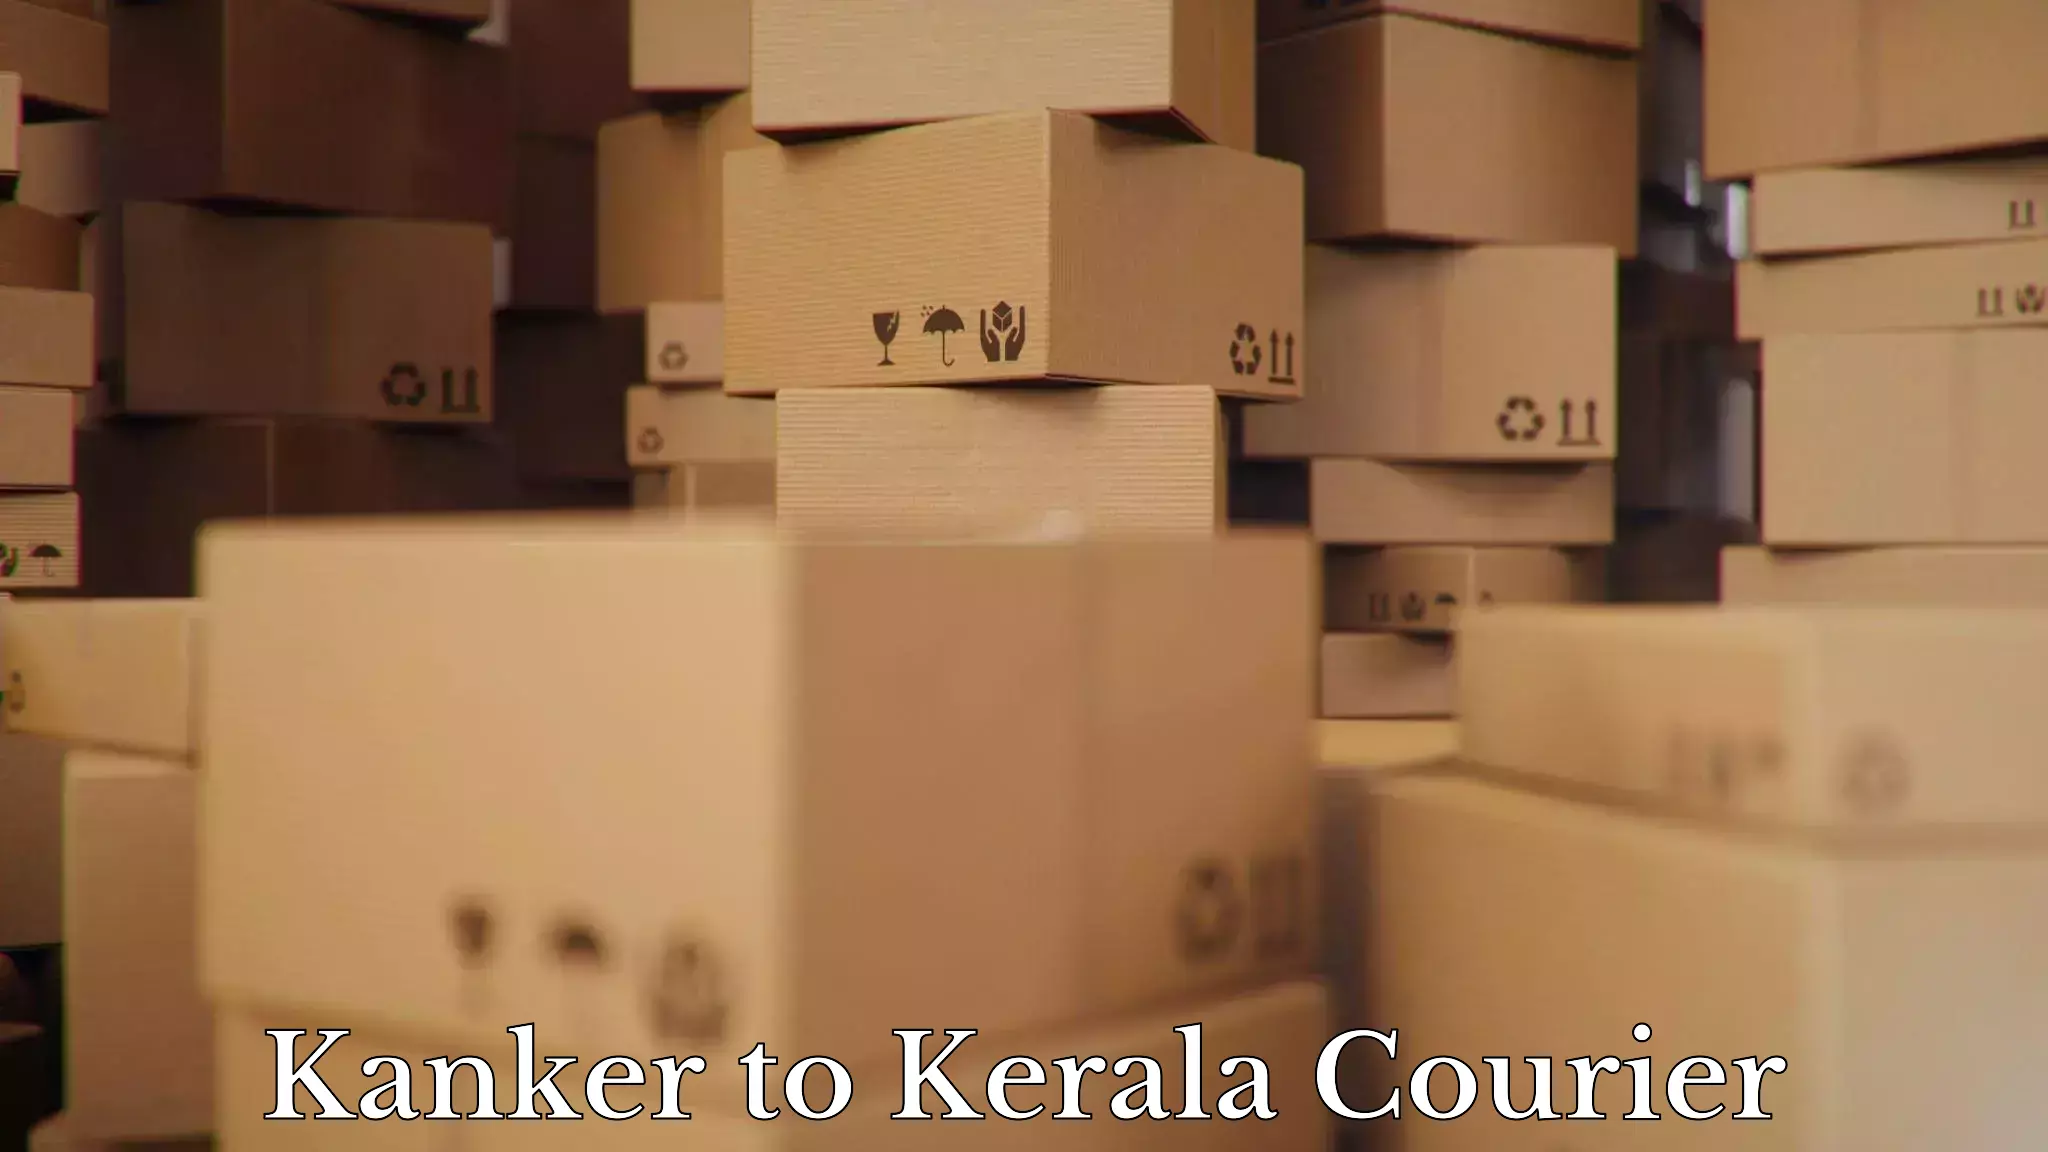 Full-service household moving Kanker to Kakkayam